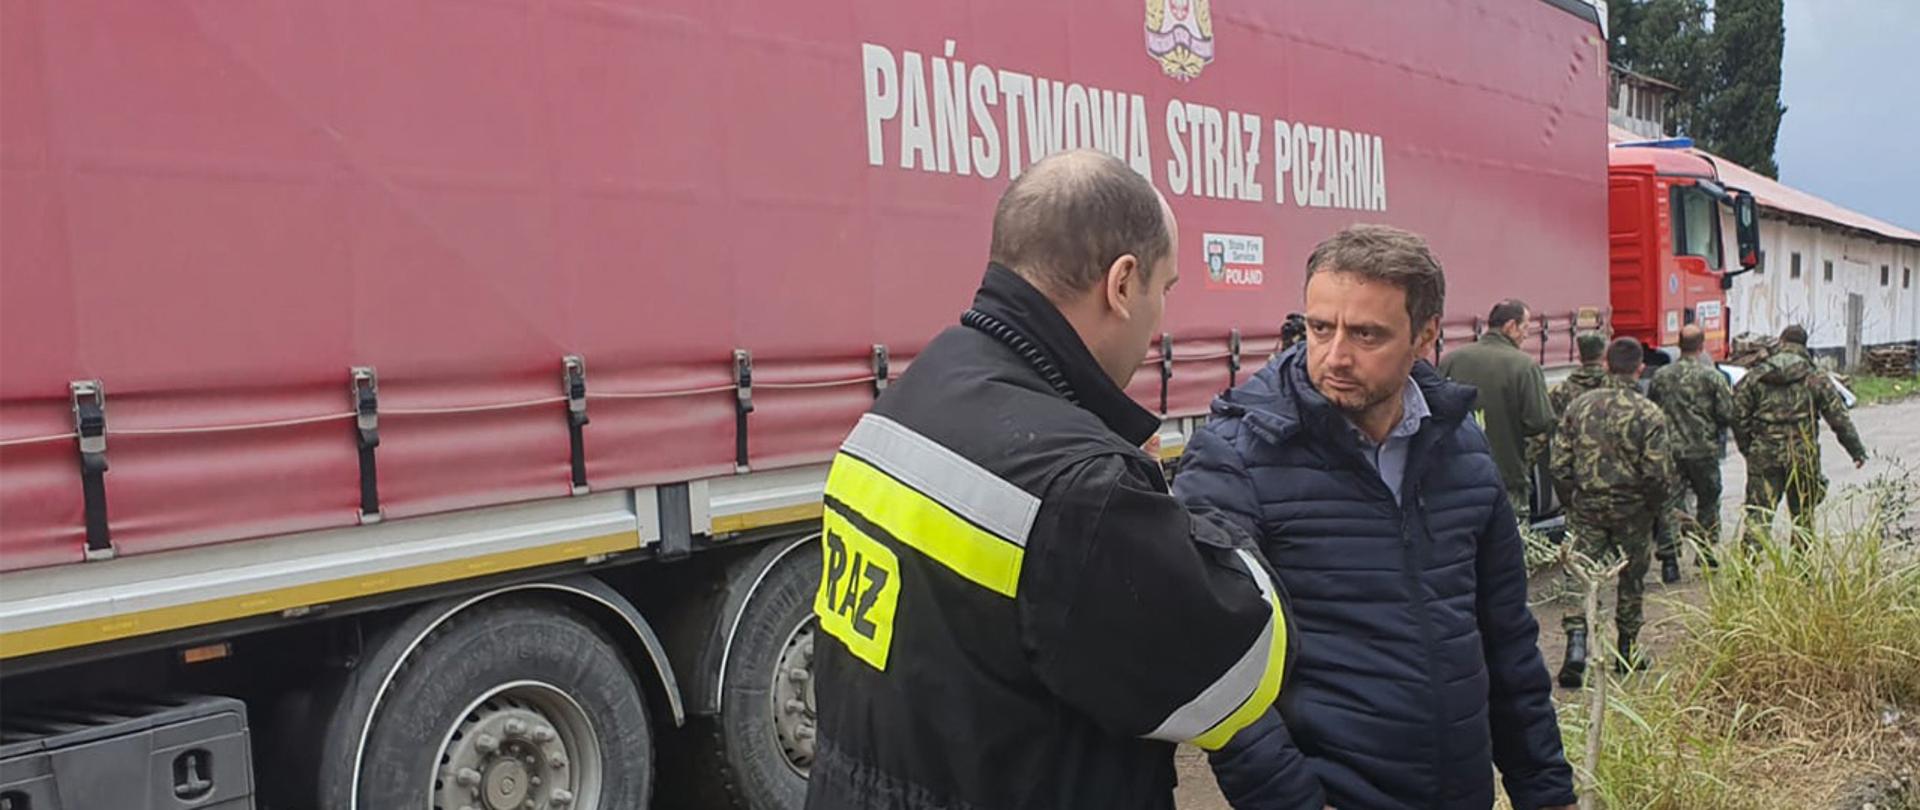 Strażacy z PSP dotarli do albańskiej Tirany, gdzie przekazali 500 łóżek polowych w ramach pomocy humanitarnej.